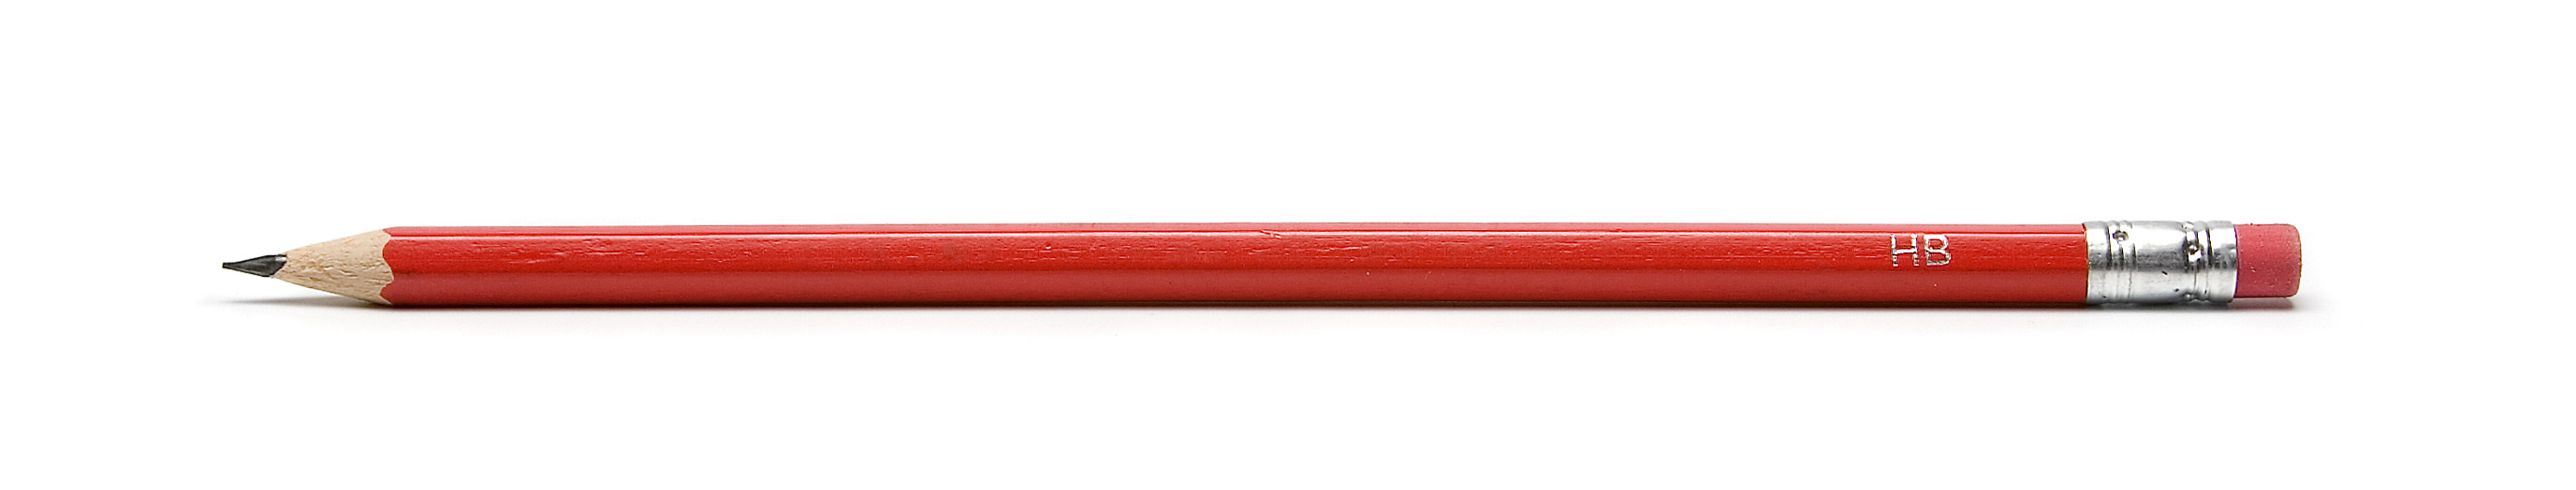 Красный карандаш картинка без фона